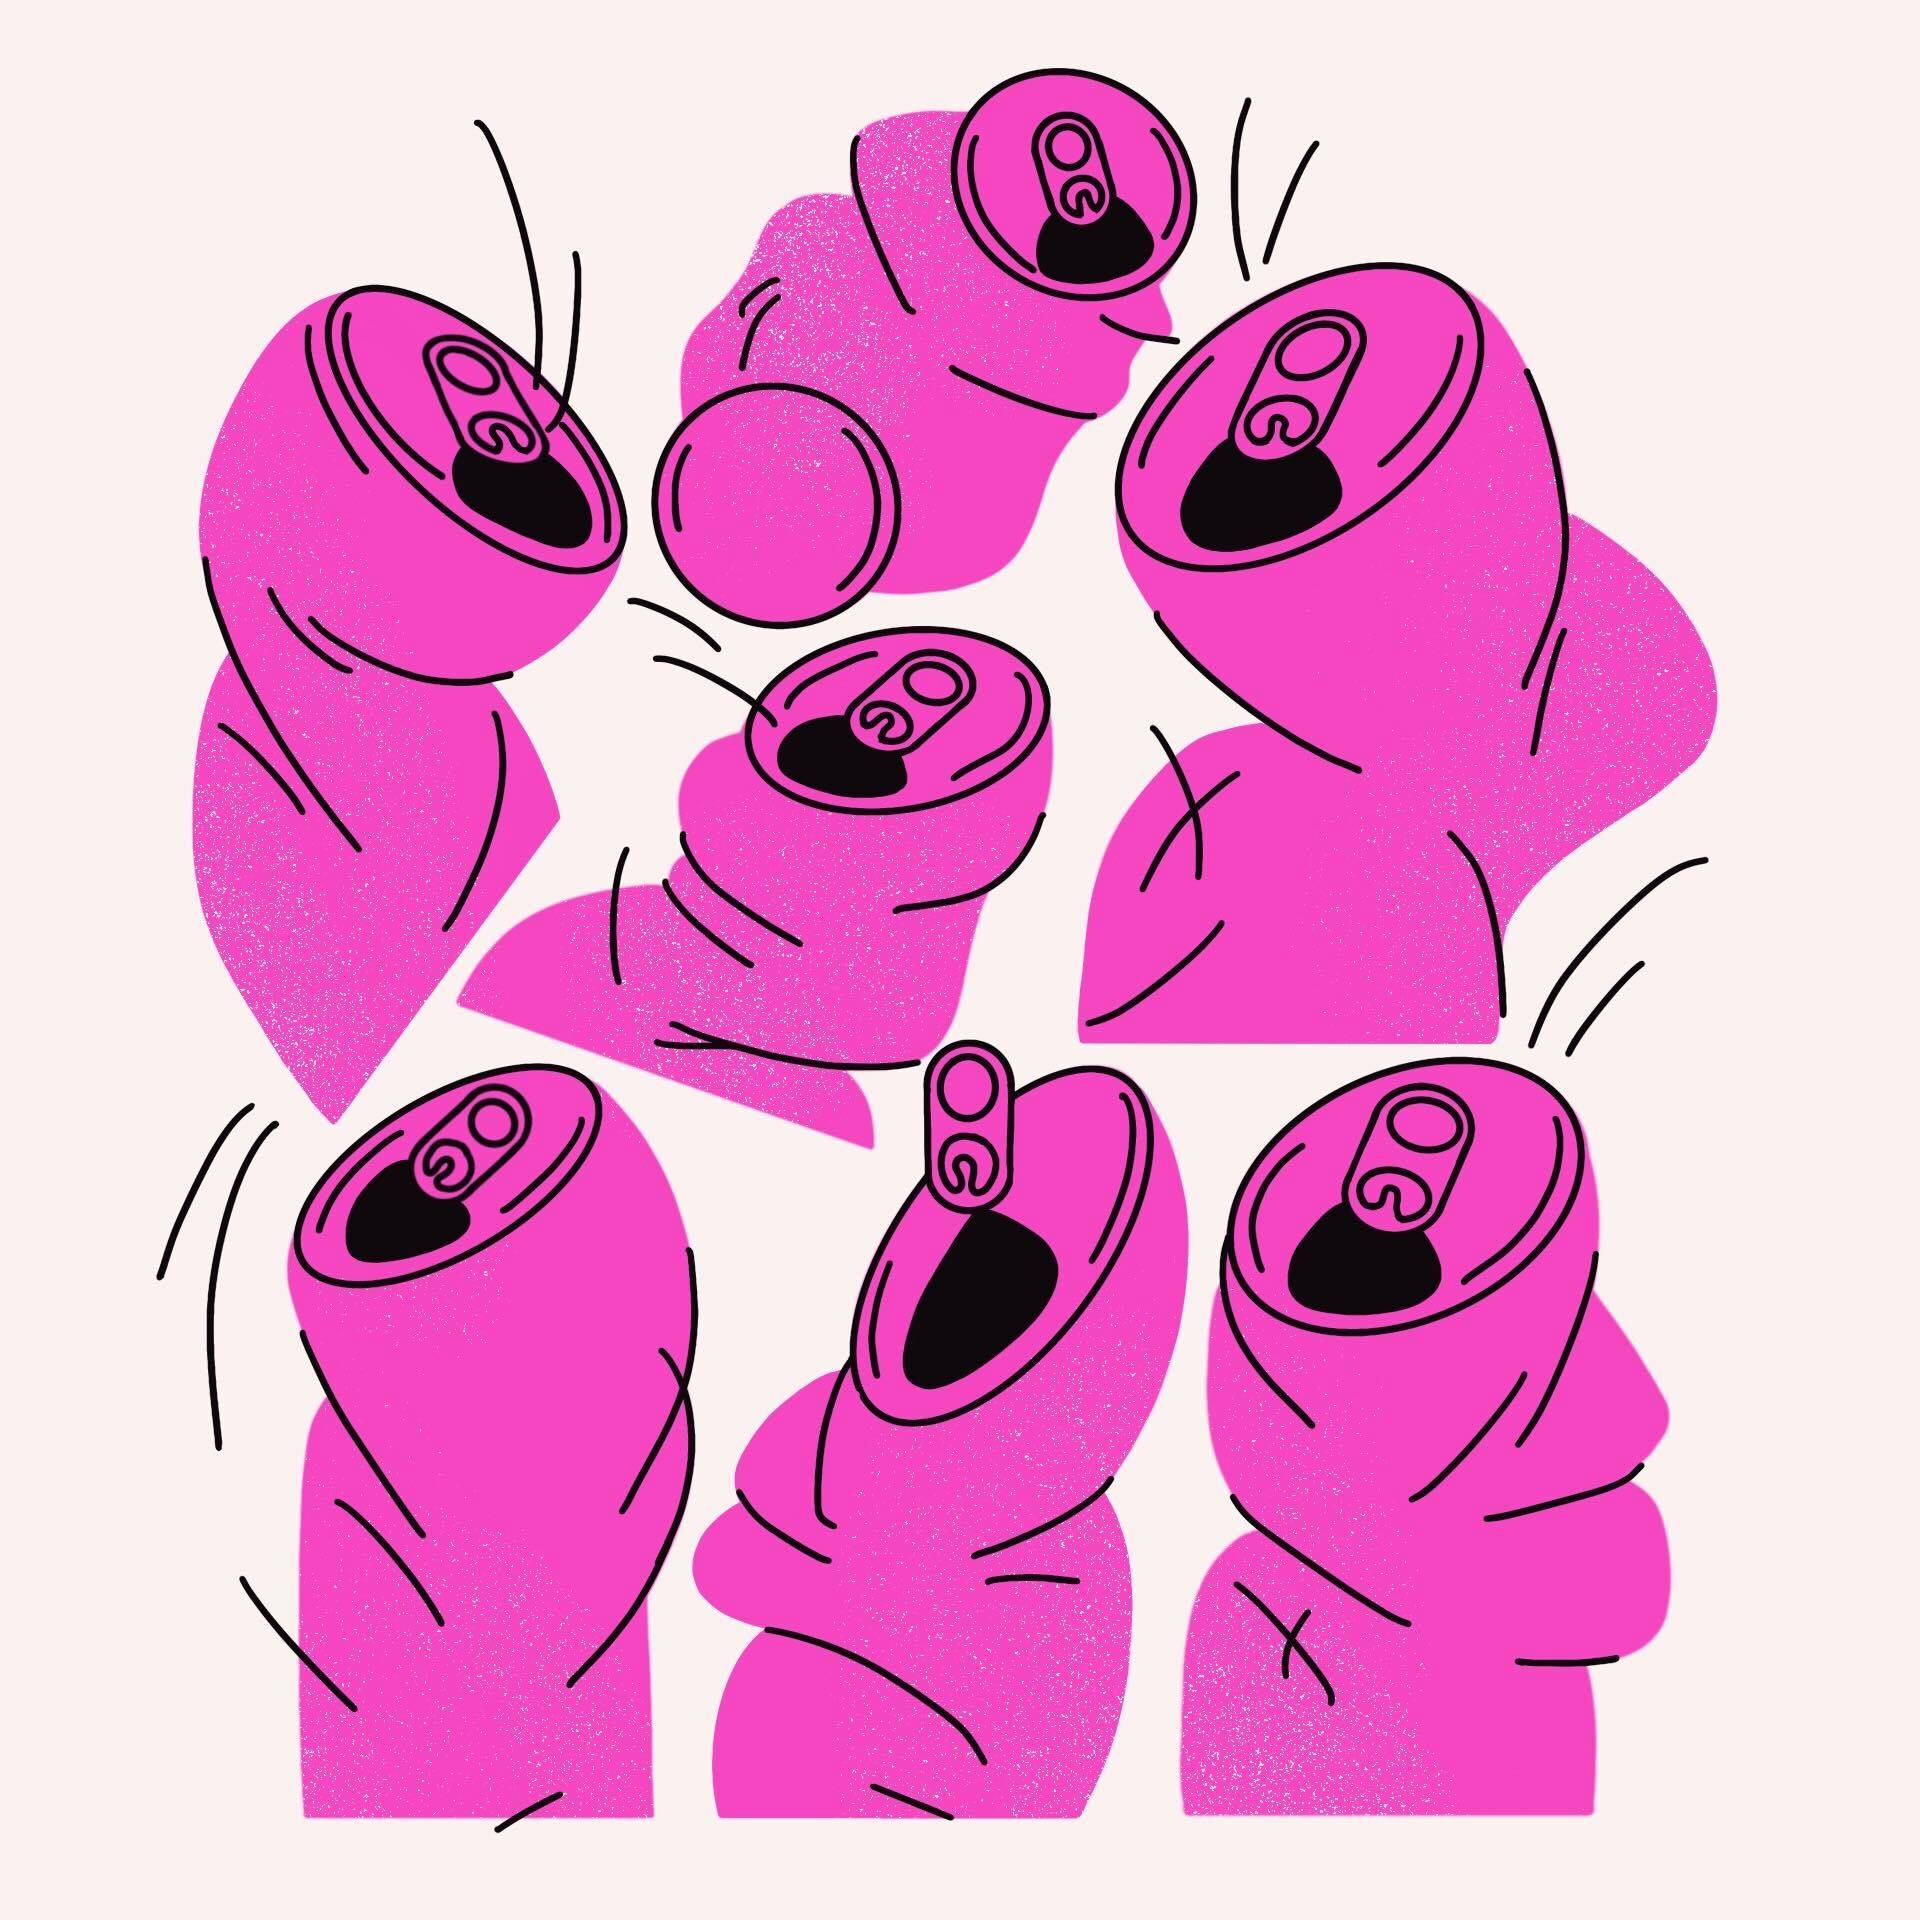 ilustracja przedstawia siedem pokrzywionych aluminiowych puszek po napojach, wszystkie w kolorze różowym